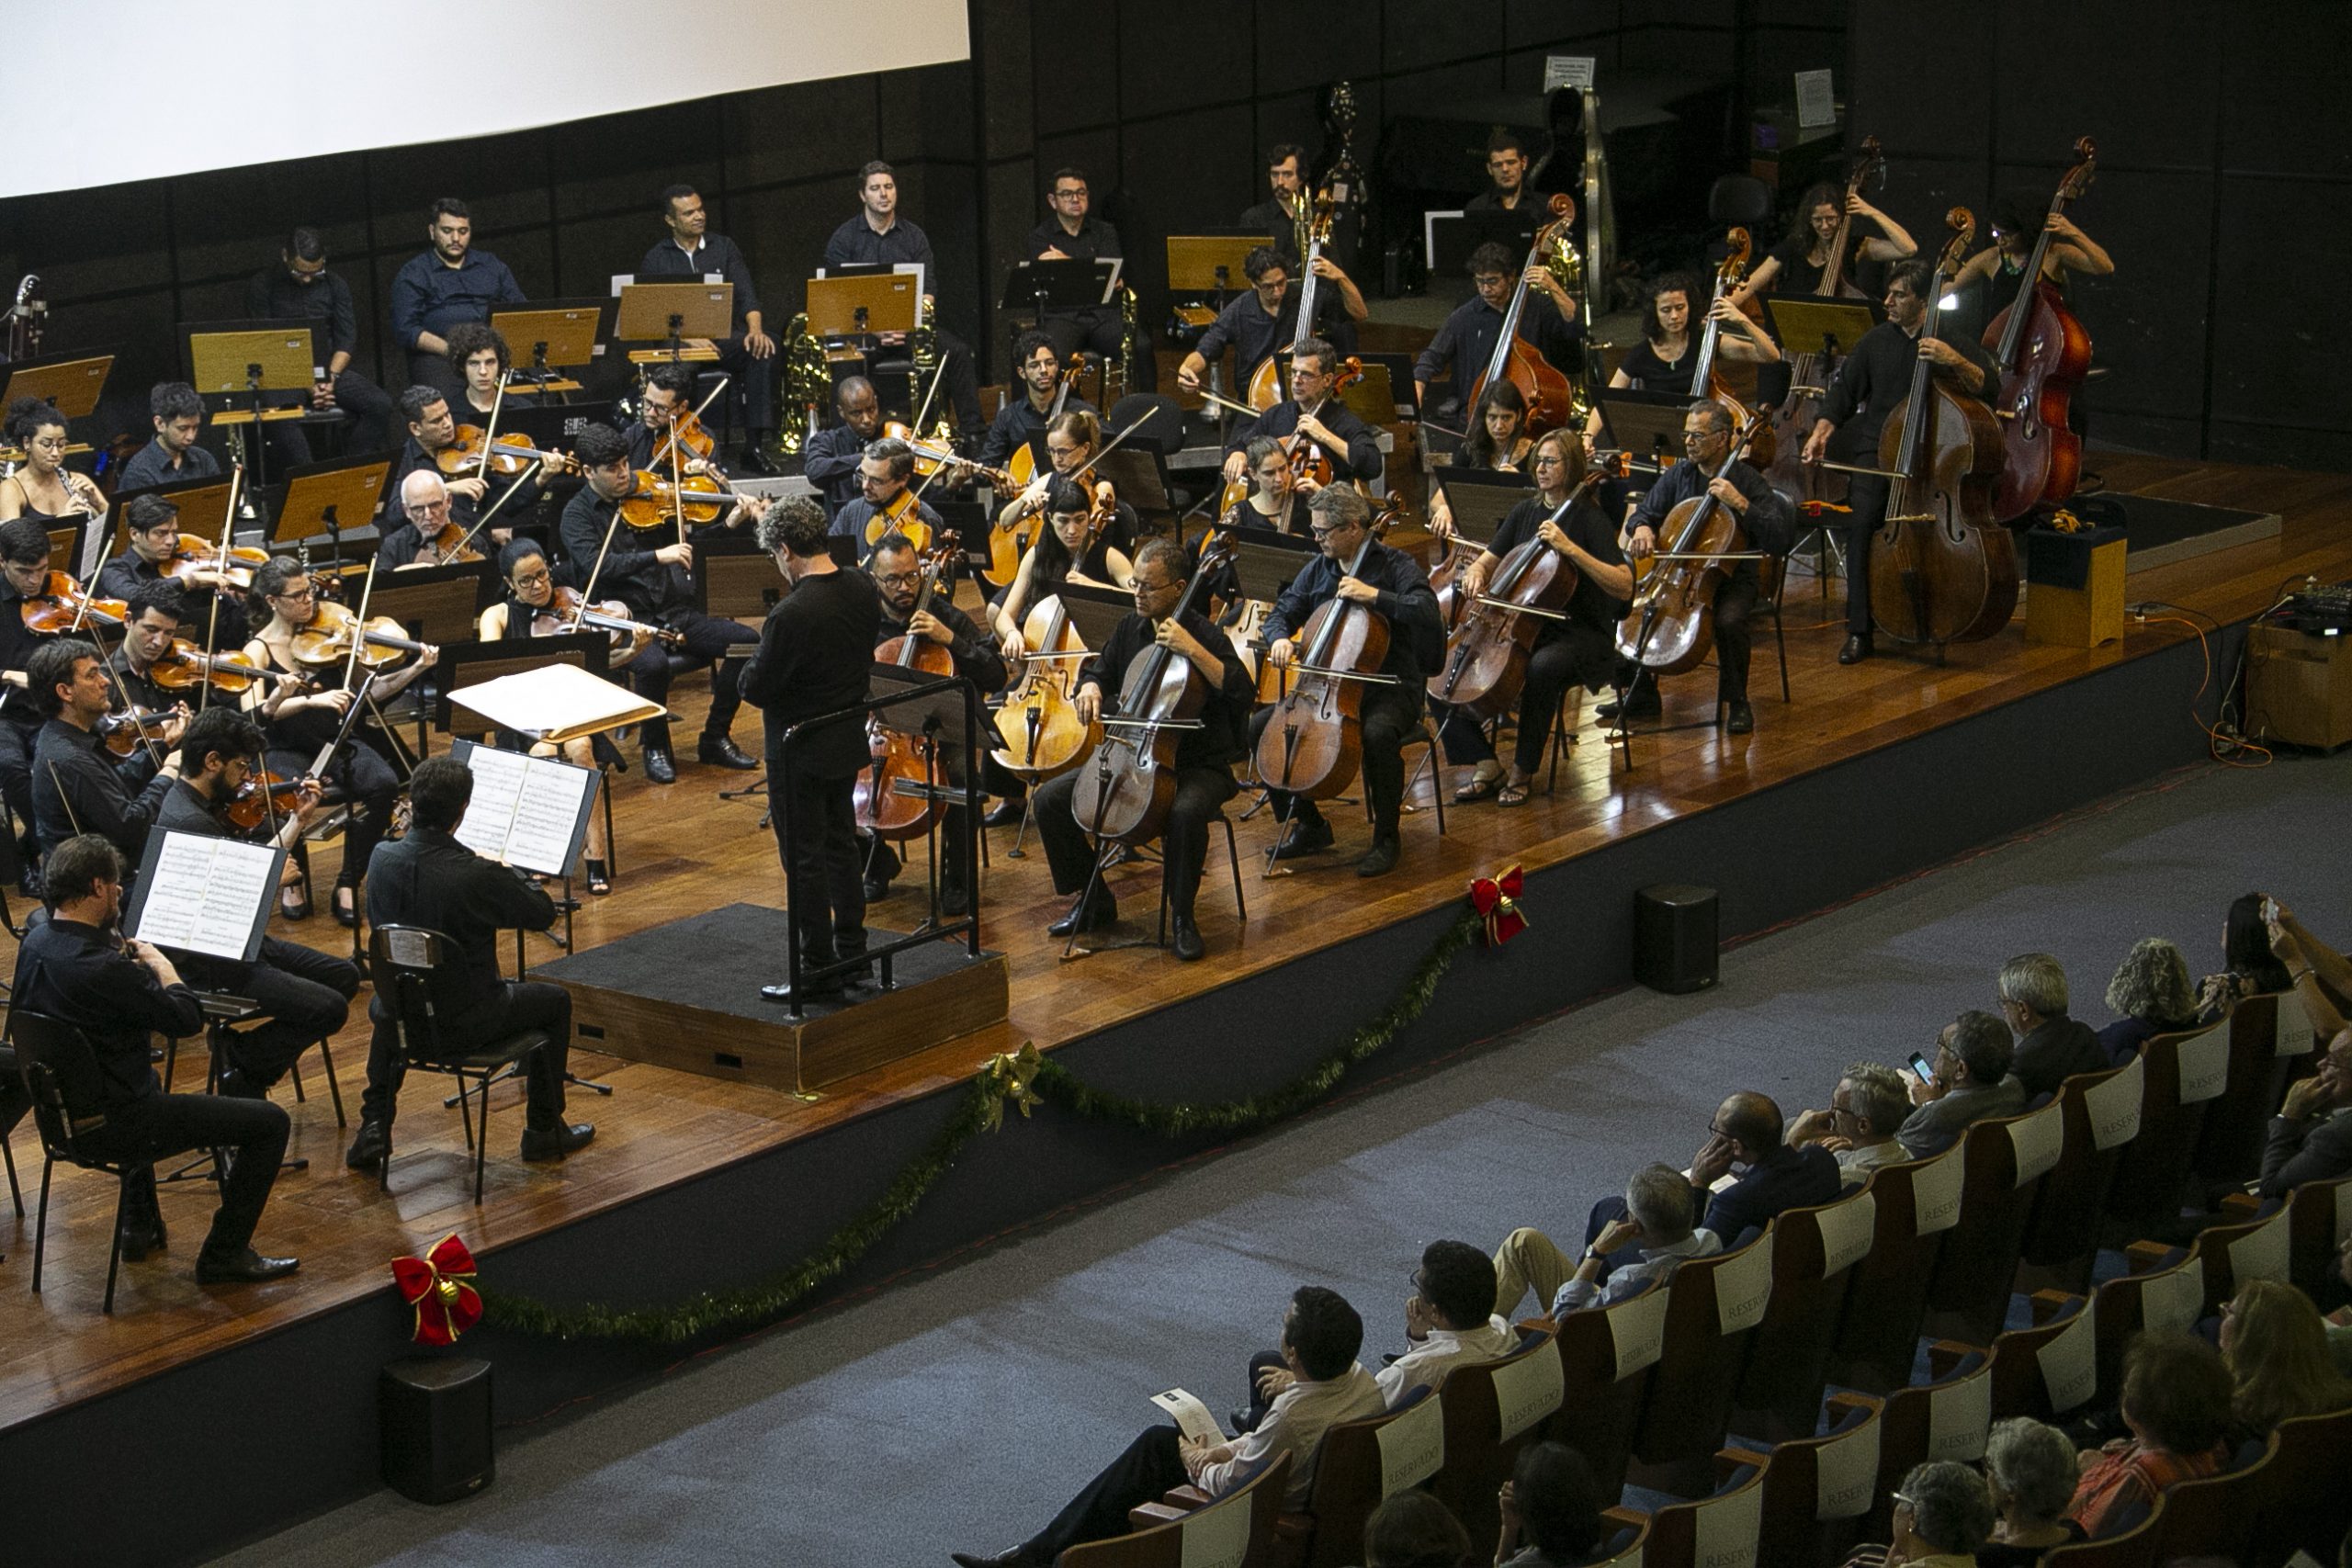 Concerto de Natal da Reitoria. Orquestra Sinfônica da USP (OSUSP). 2019/12/13 Foto: Marcos Santos/USP Imagens